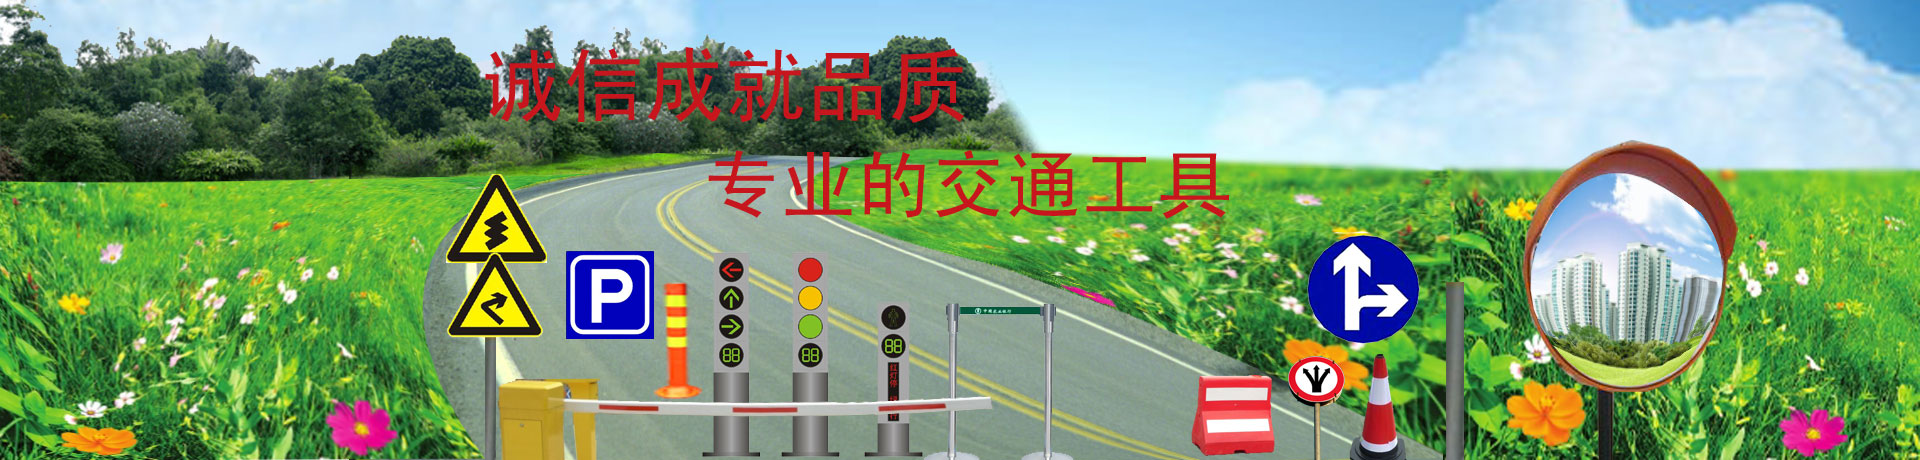 云南贵阳交通道路交通标志牌设施施工公司提醒高速公路上行驶规定